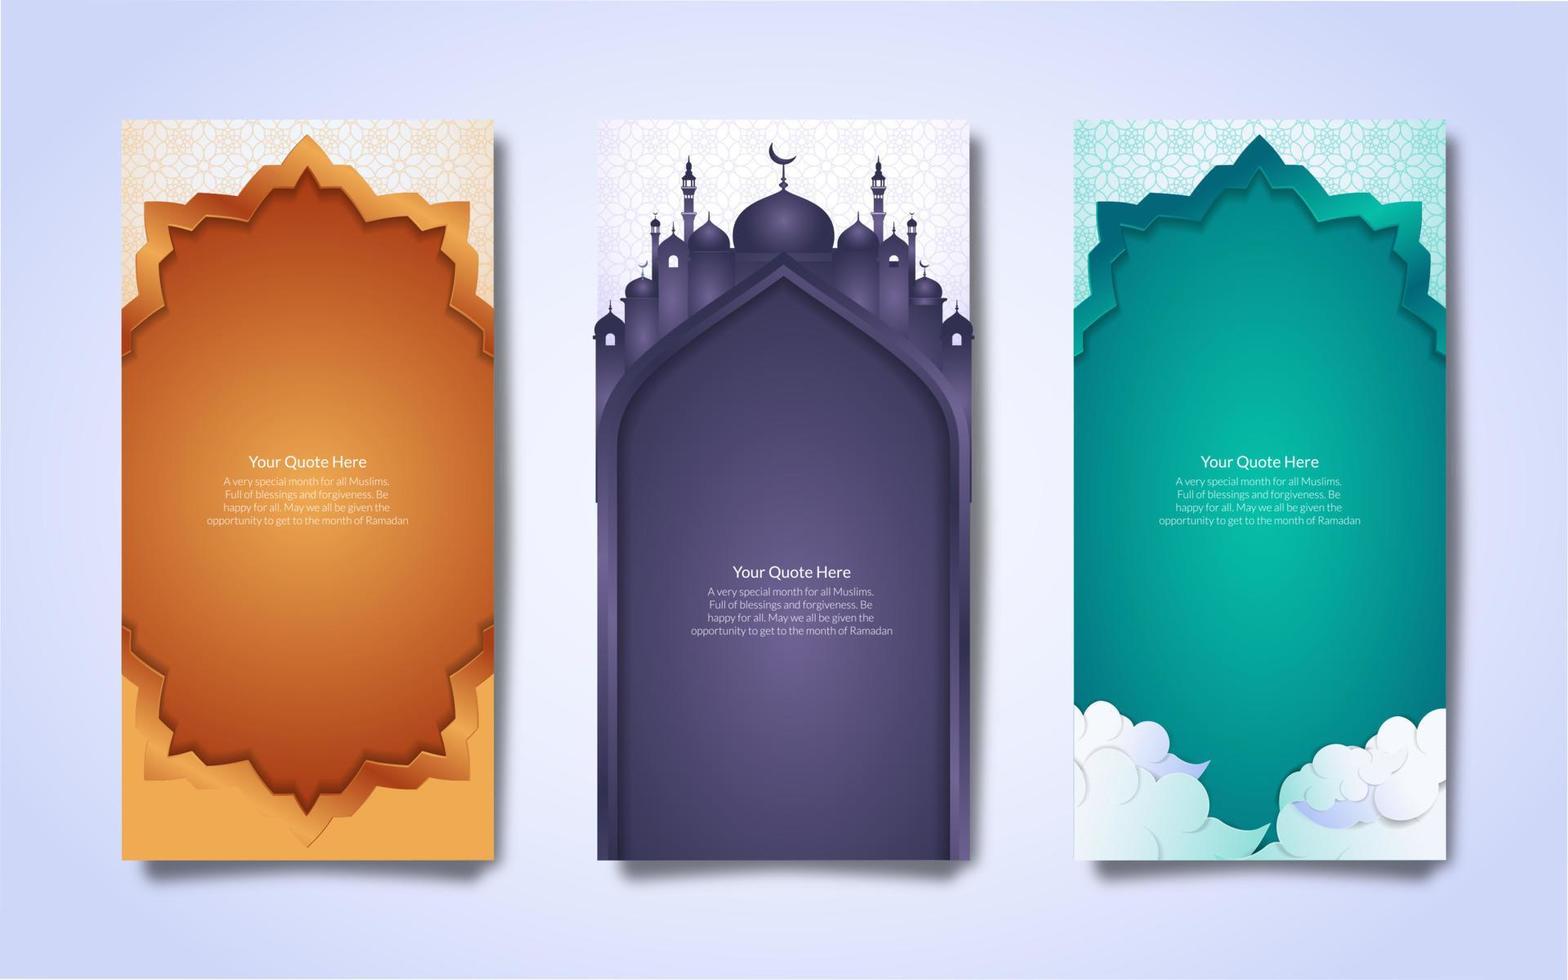 agrupar coleção do eid Mubarak islâmico faixas dentro três diferente cores. pode estar usava para digital ou impresso bandeiras. vetor ilustração